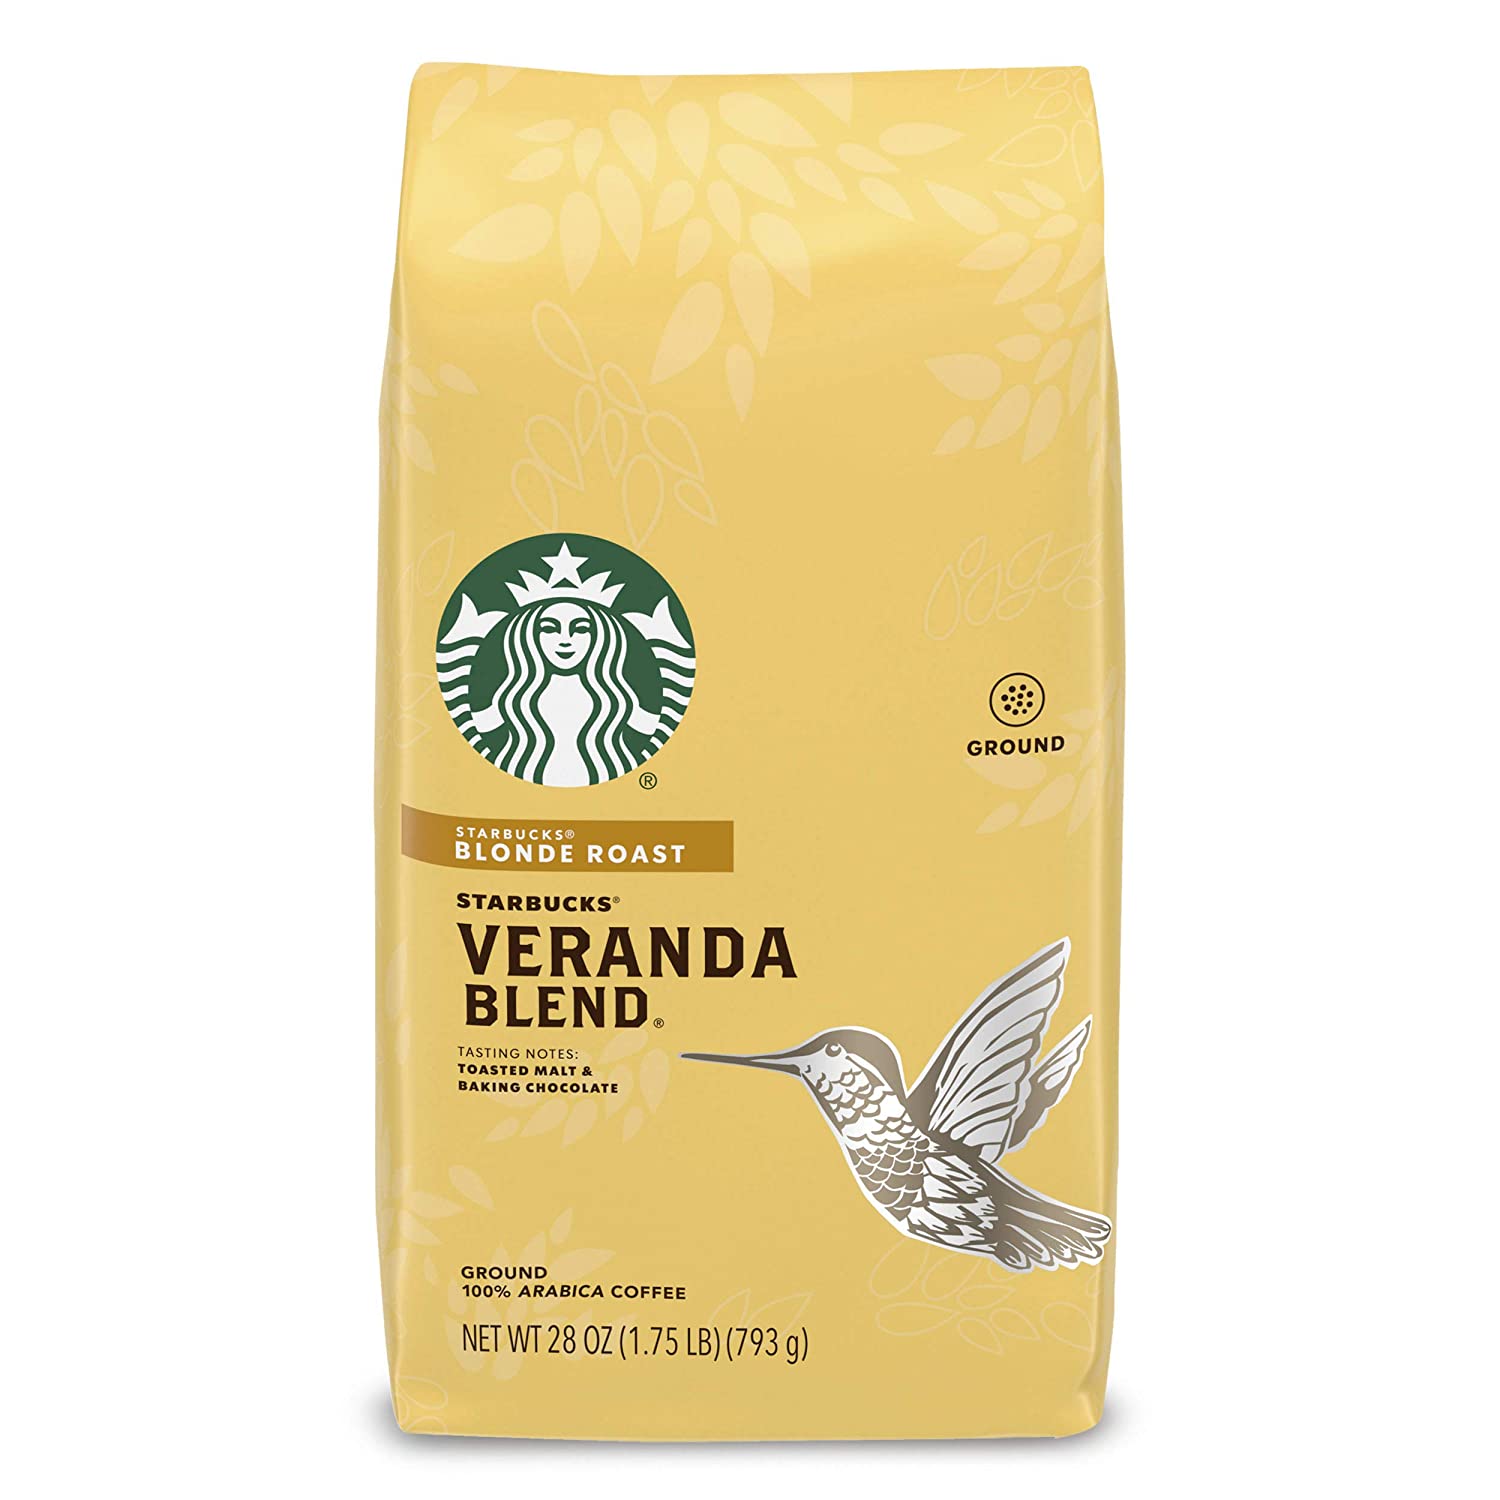  7. Starbucks Blonde Roast Coffee – Veranda Blend (1 package)